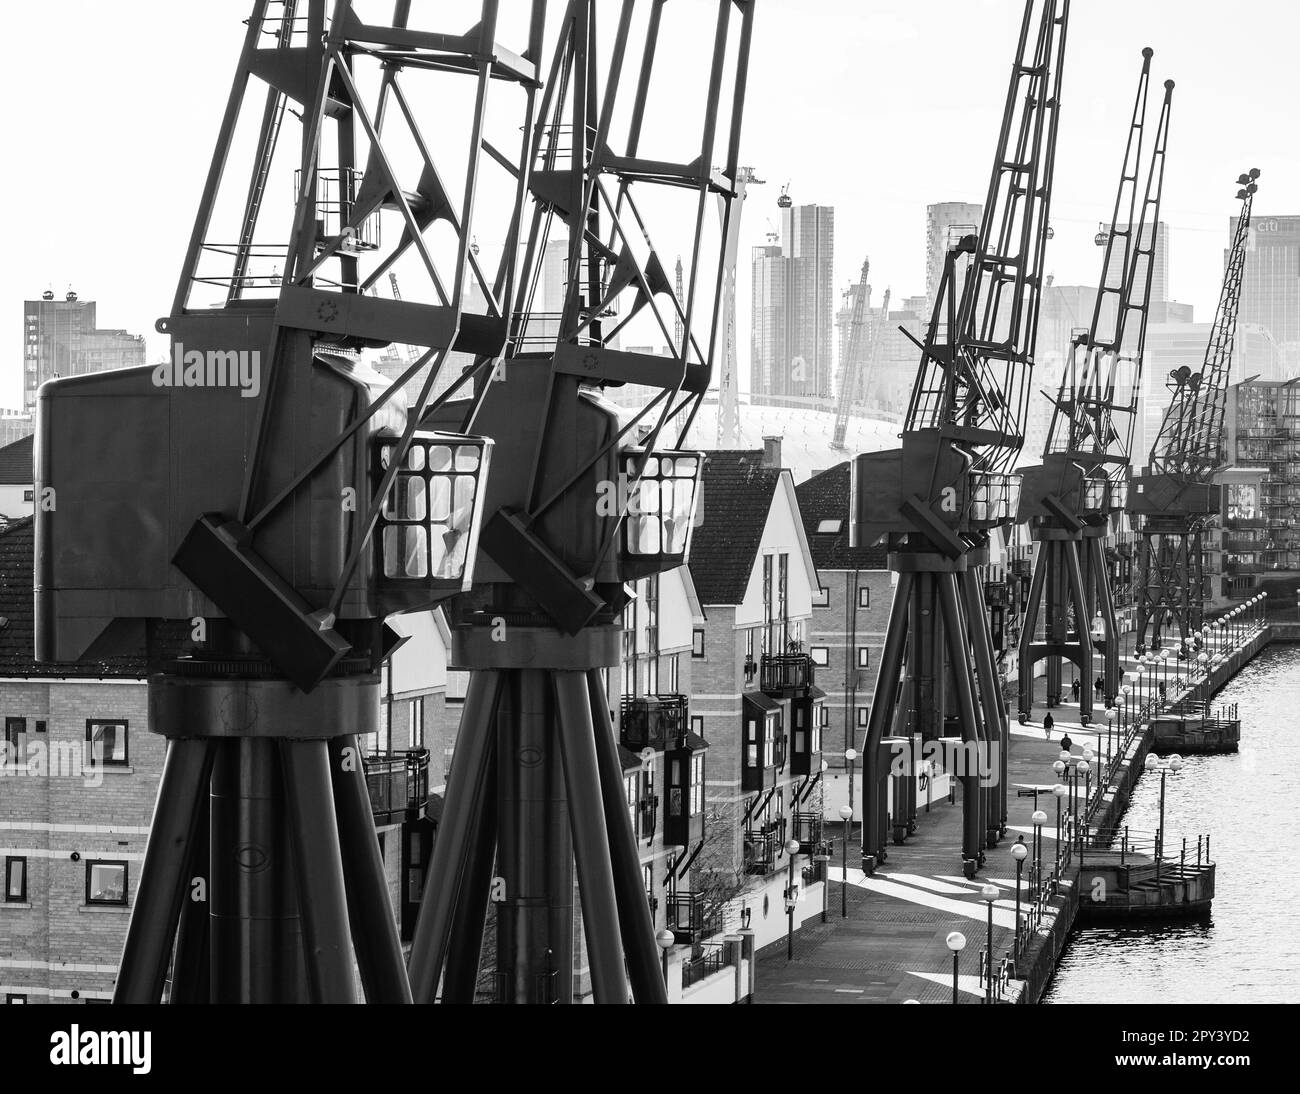 Dockers Cranes stehen als Dekoration, eine Ode an die industrielle Vergangenheit, Royal Victoria Dock, Silvertown, Newham, East London. Industrielles Erbe England. Stockfoto